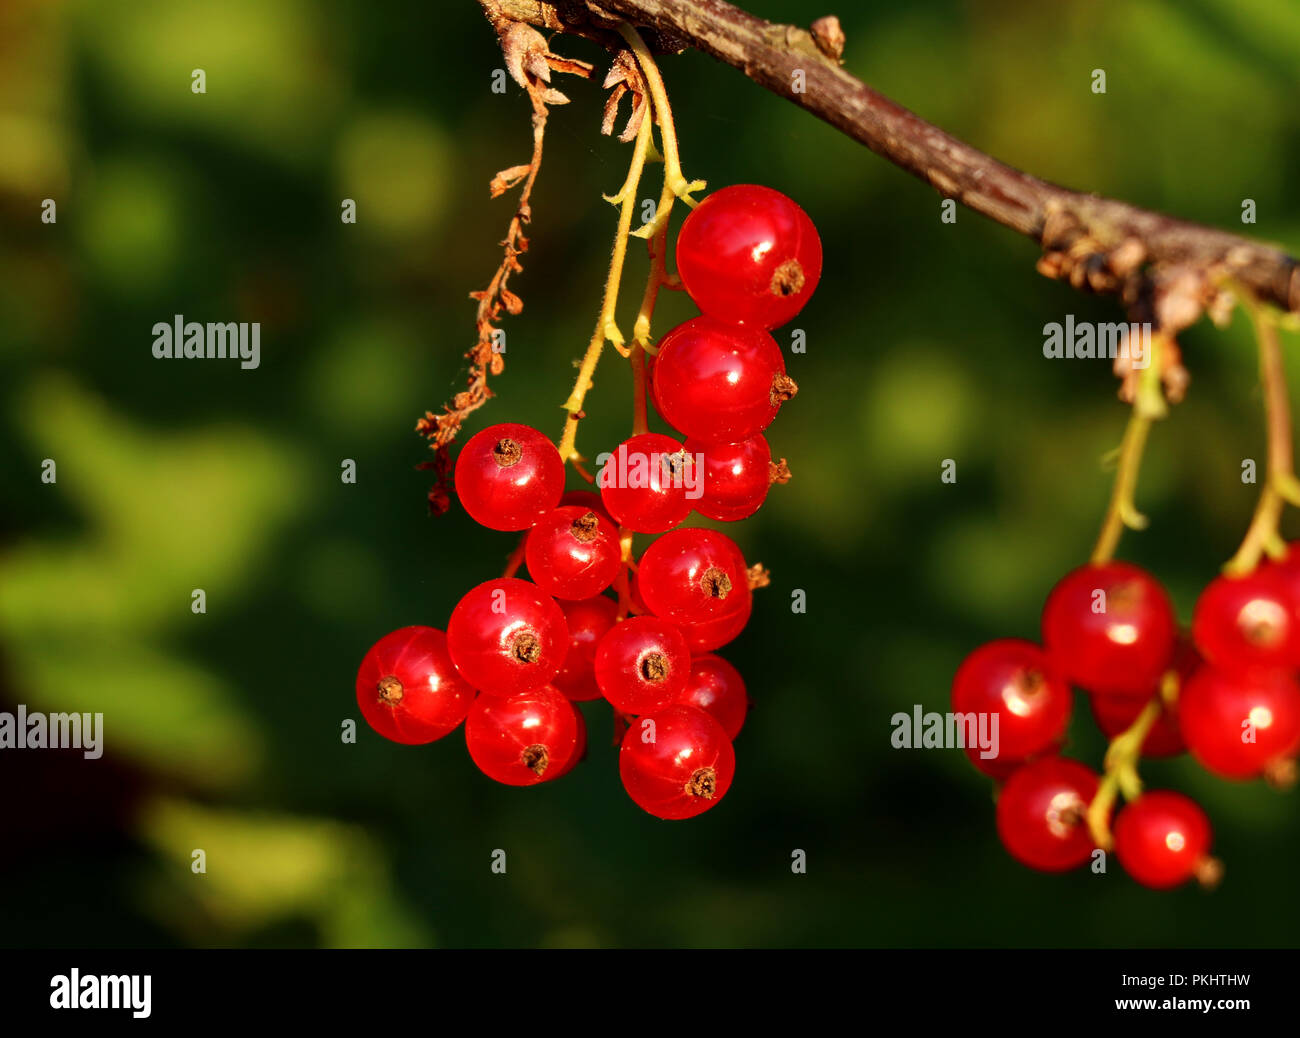 Zeitpunkt von Stockfotografie für roten Stamm Hängen an Beeren Sammeln Ein Johannisbeeren. diese kleinen Beeren. der vielen mit Idealer Alamy -